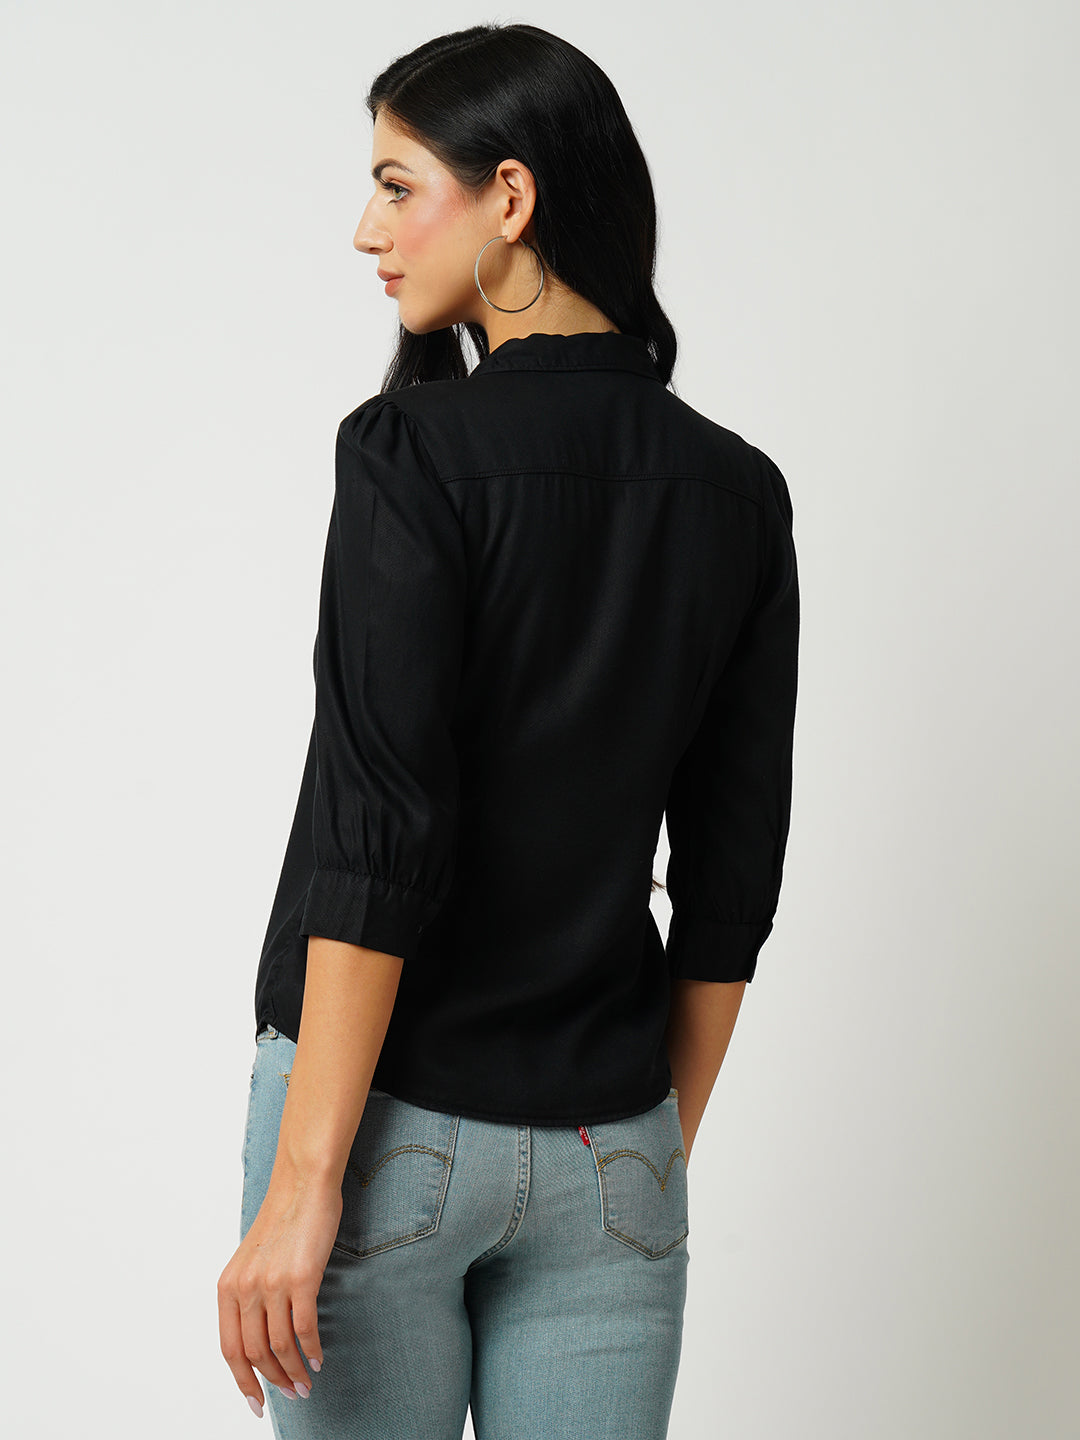 Womens Black Three-Quarter Sleeves Shirts